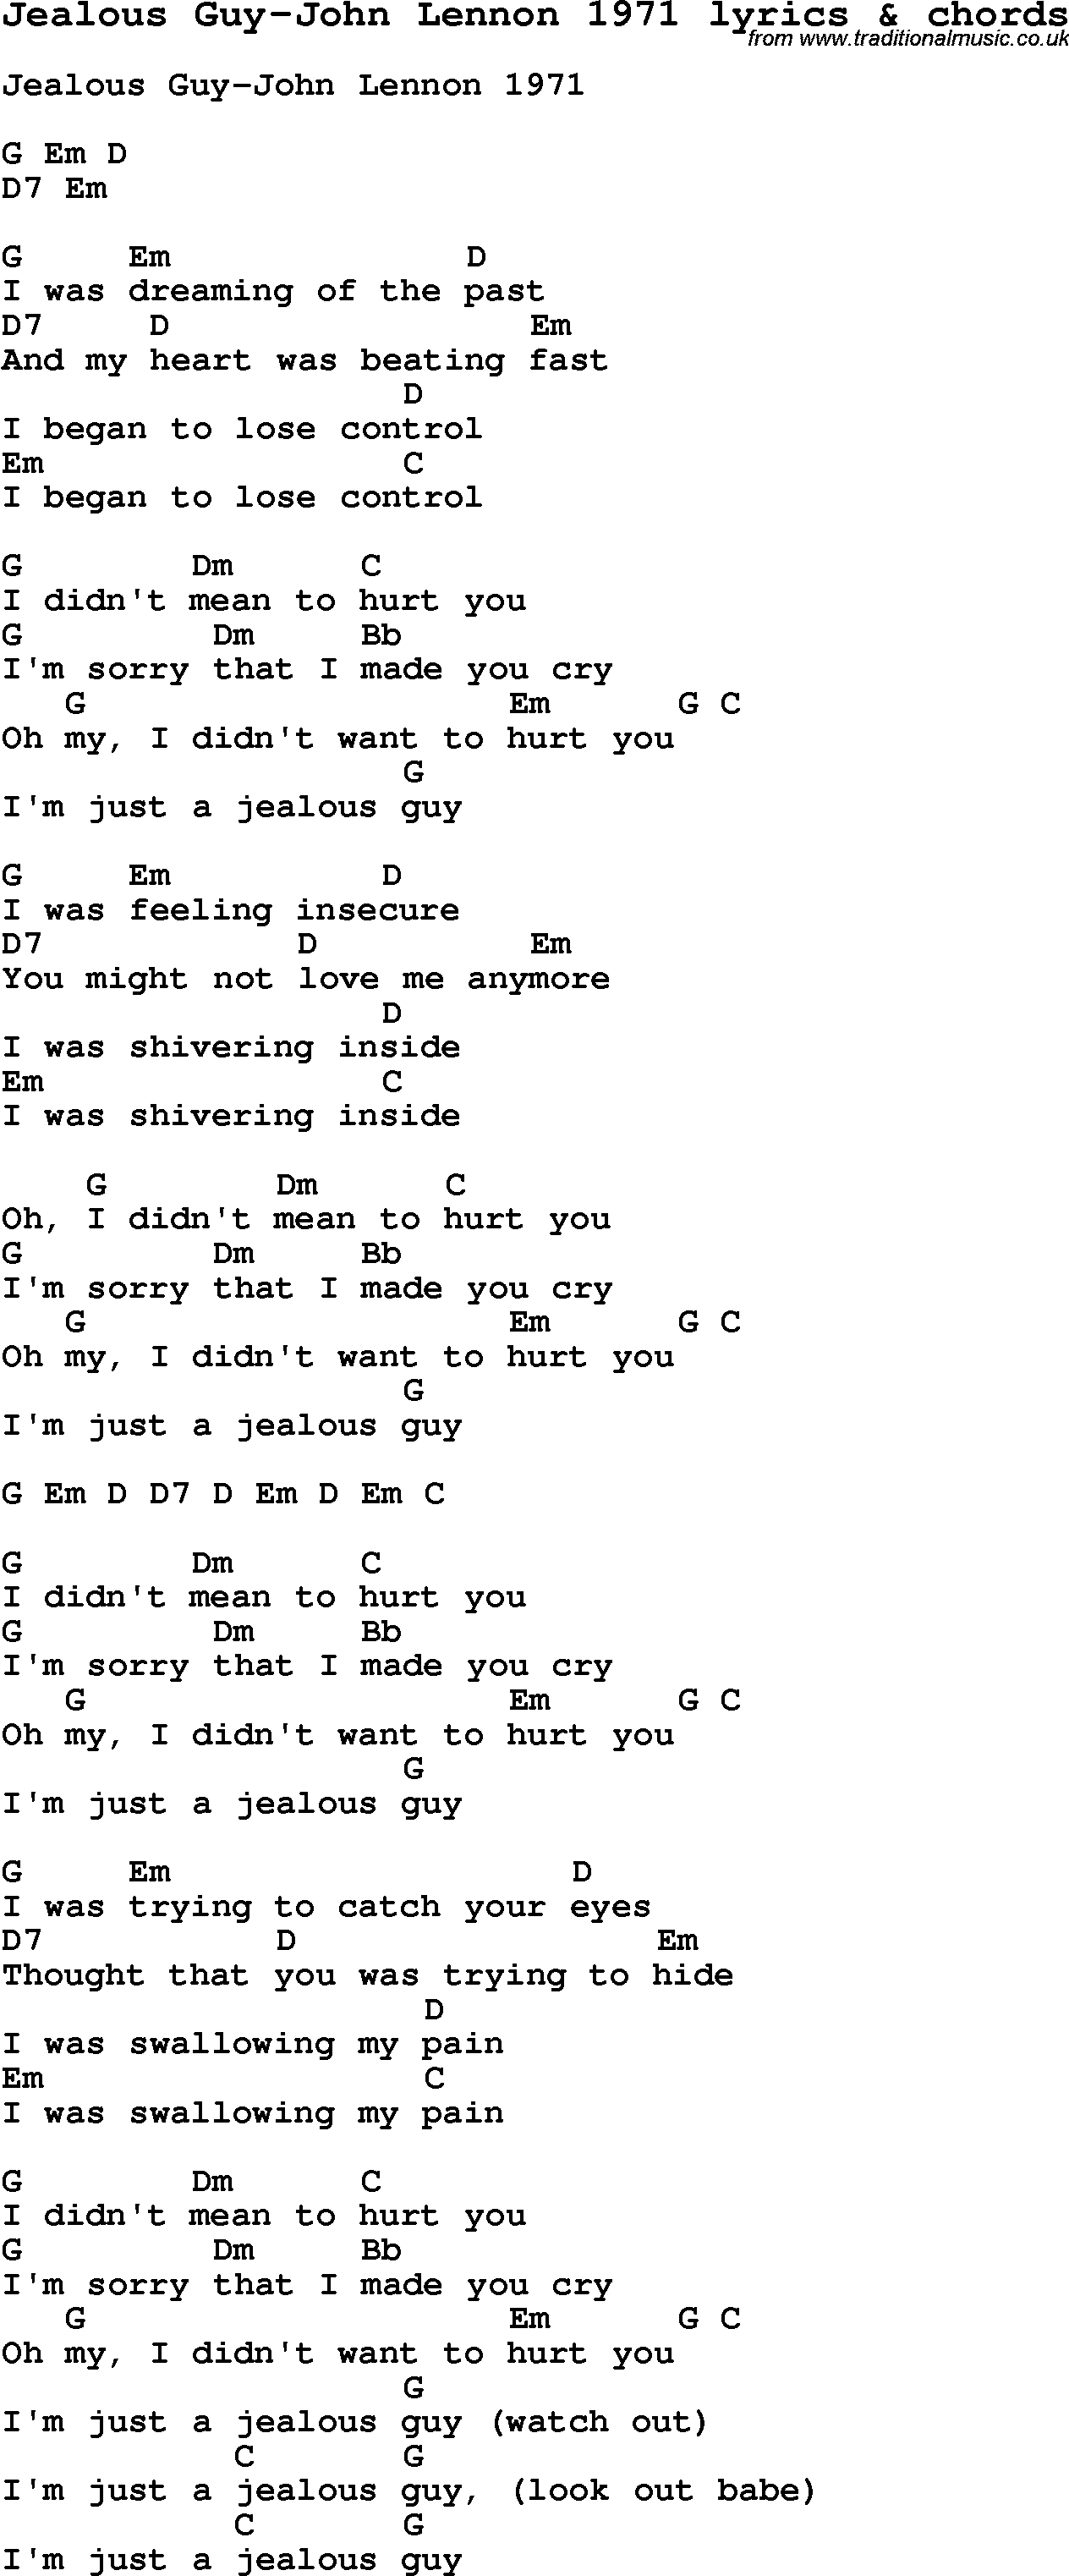 Love Song Lyrics for: Jealous Guy-John Lennon 1971 with chords for Ukulele, Guitar Banjo etc.